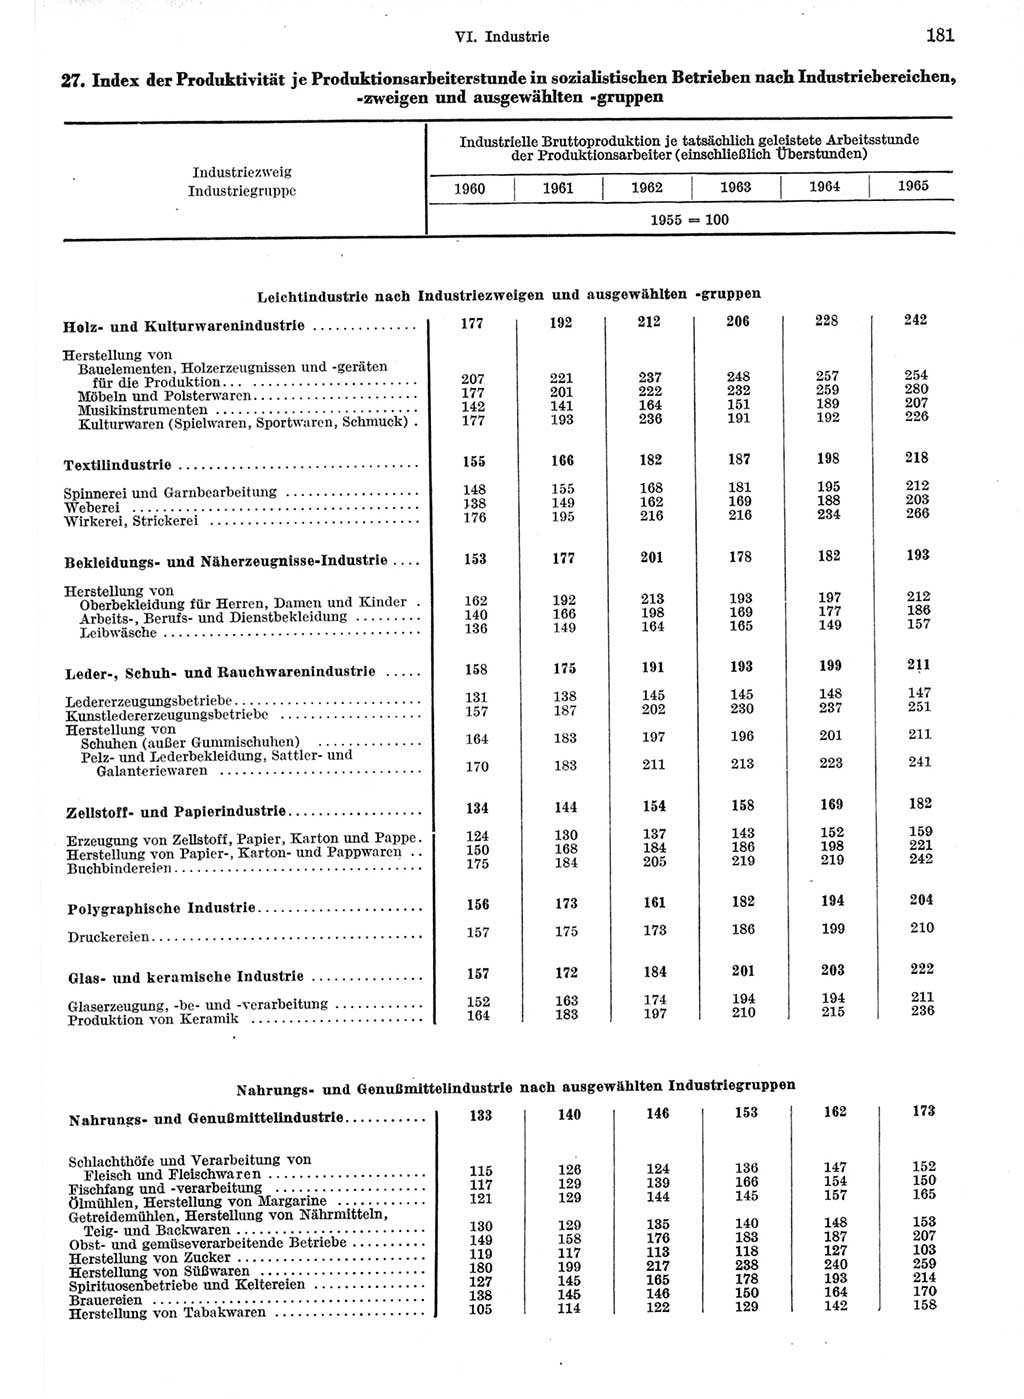 Statistisches Jahrbuch der Deutschen Demokratischen Republik (DDR) 1967, Seite 181 (Stat. Jb. DDR 1967, S. 181)